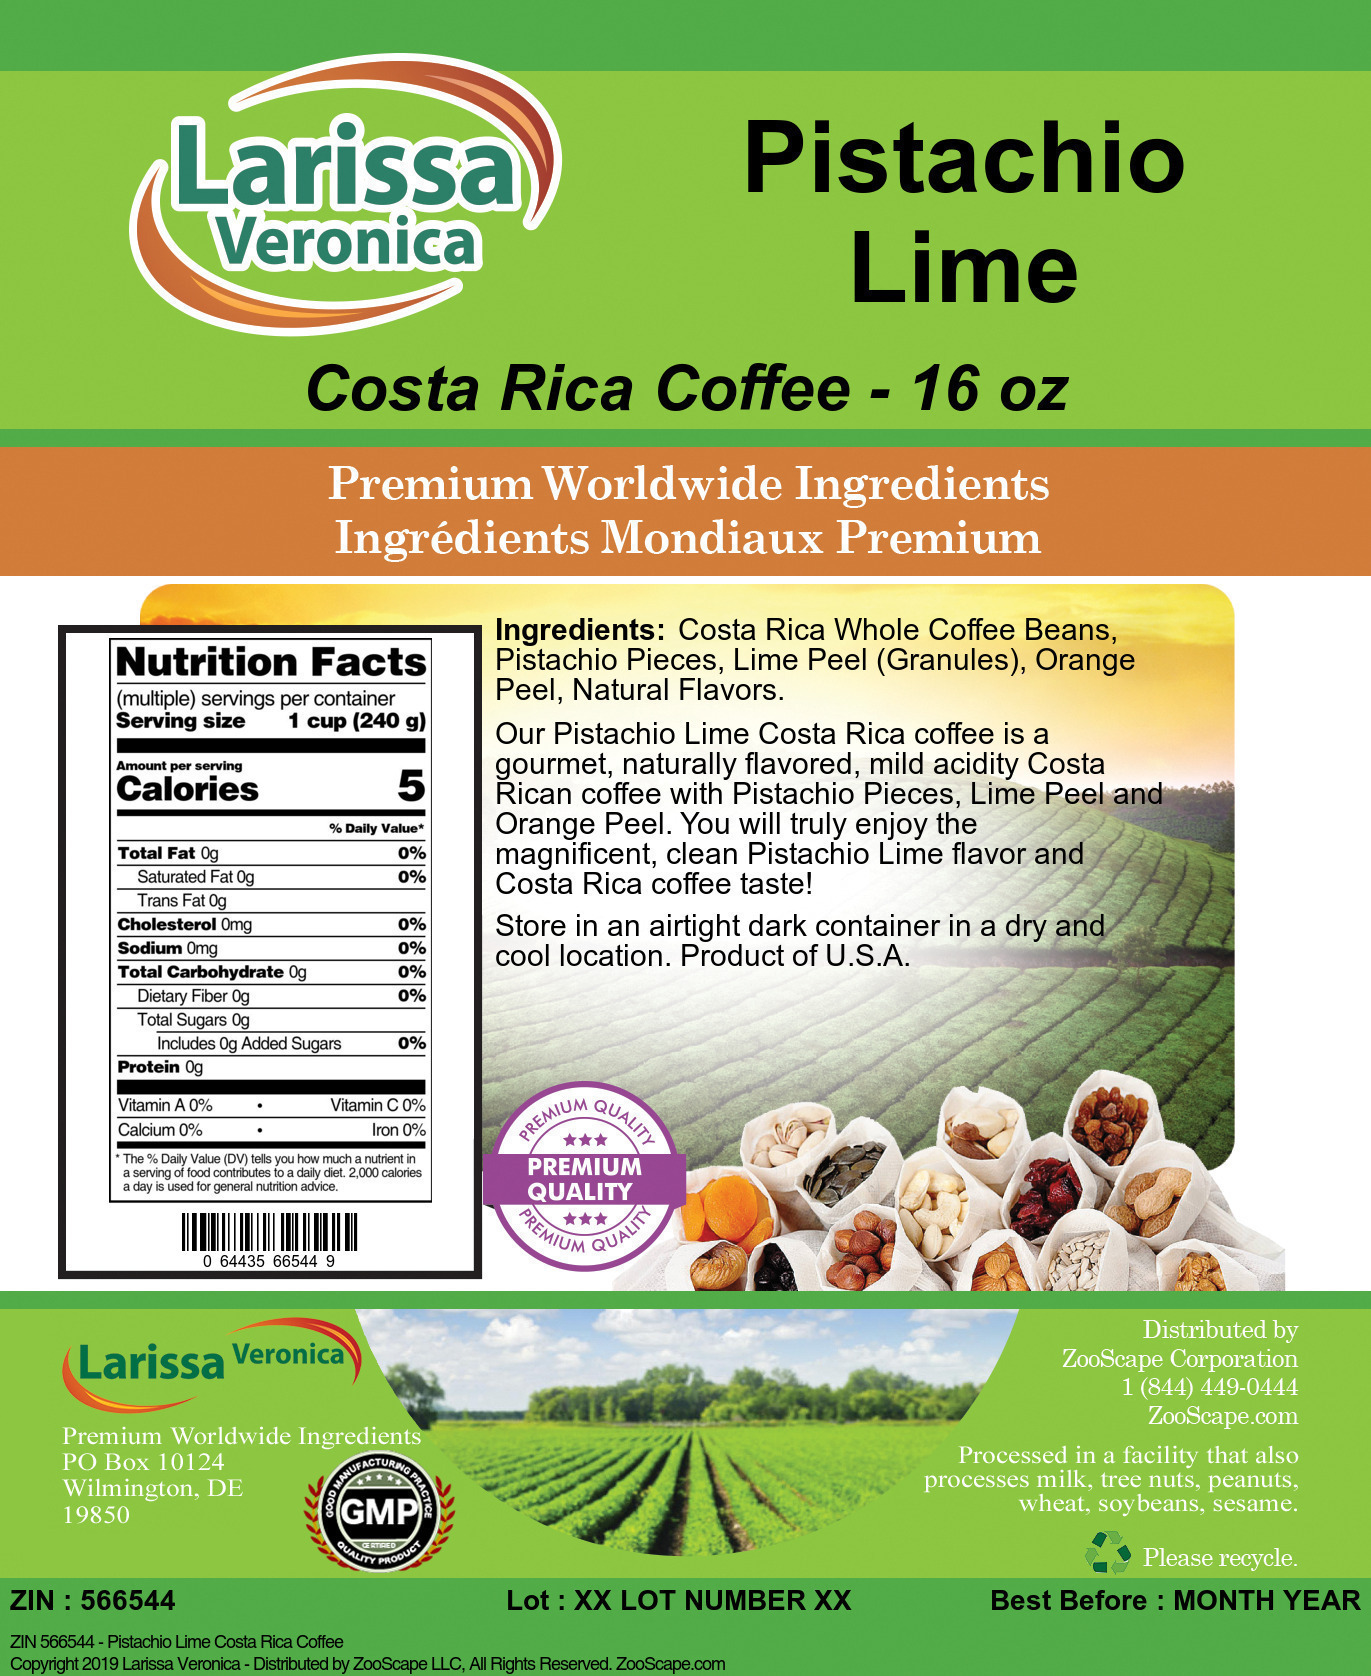 Pistachio Lime Costa Rica Coffee - Label